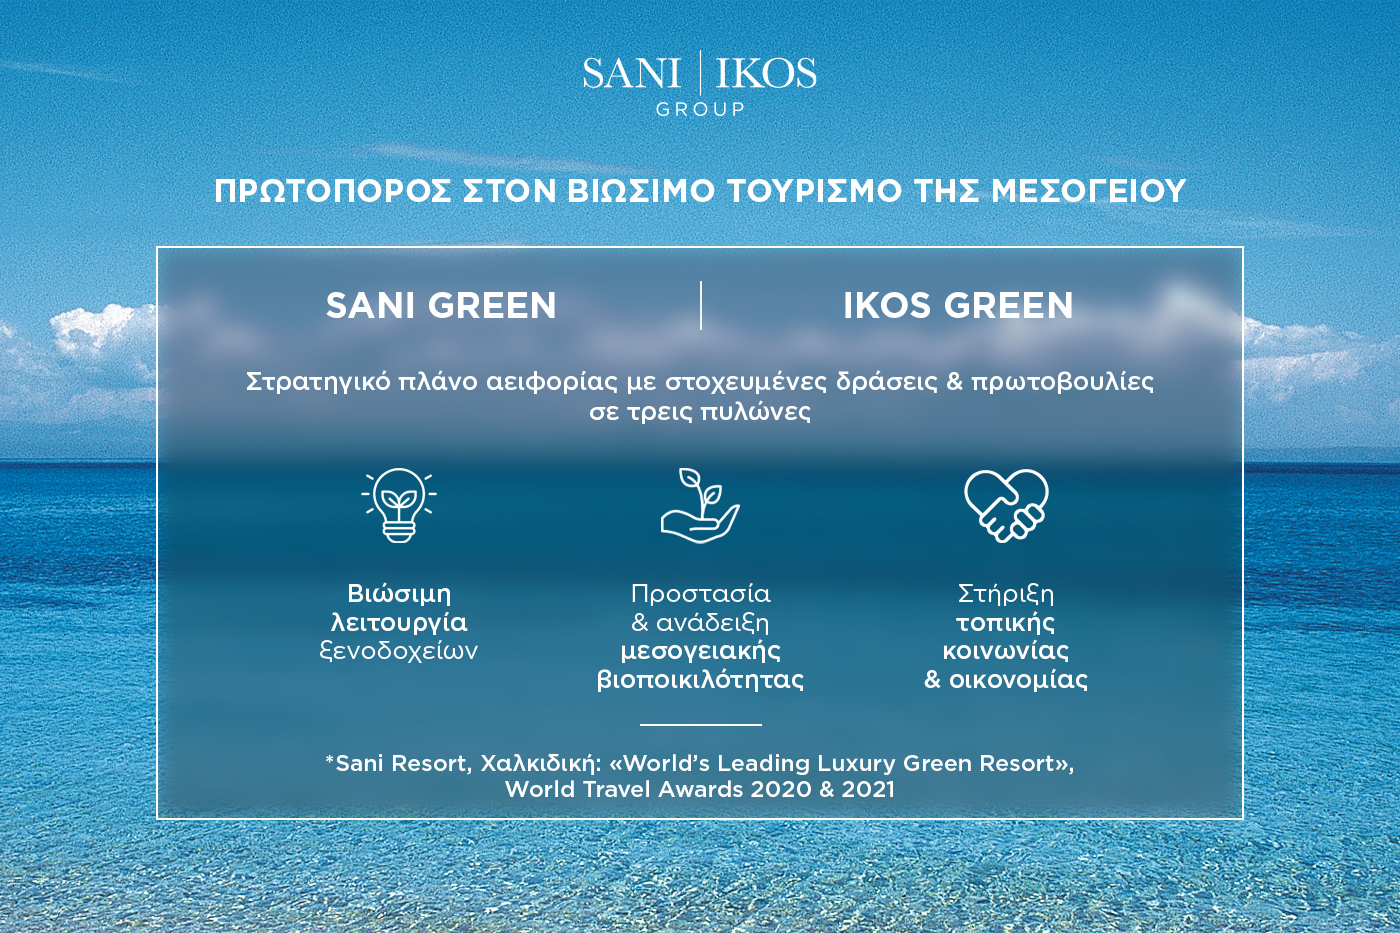 Sani Ikos Group Sustainability